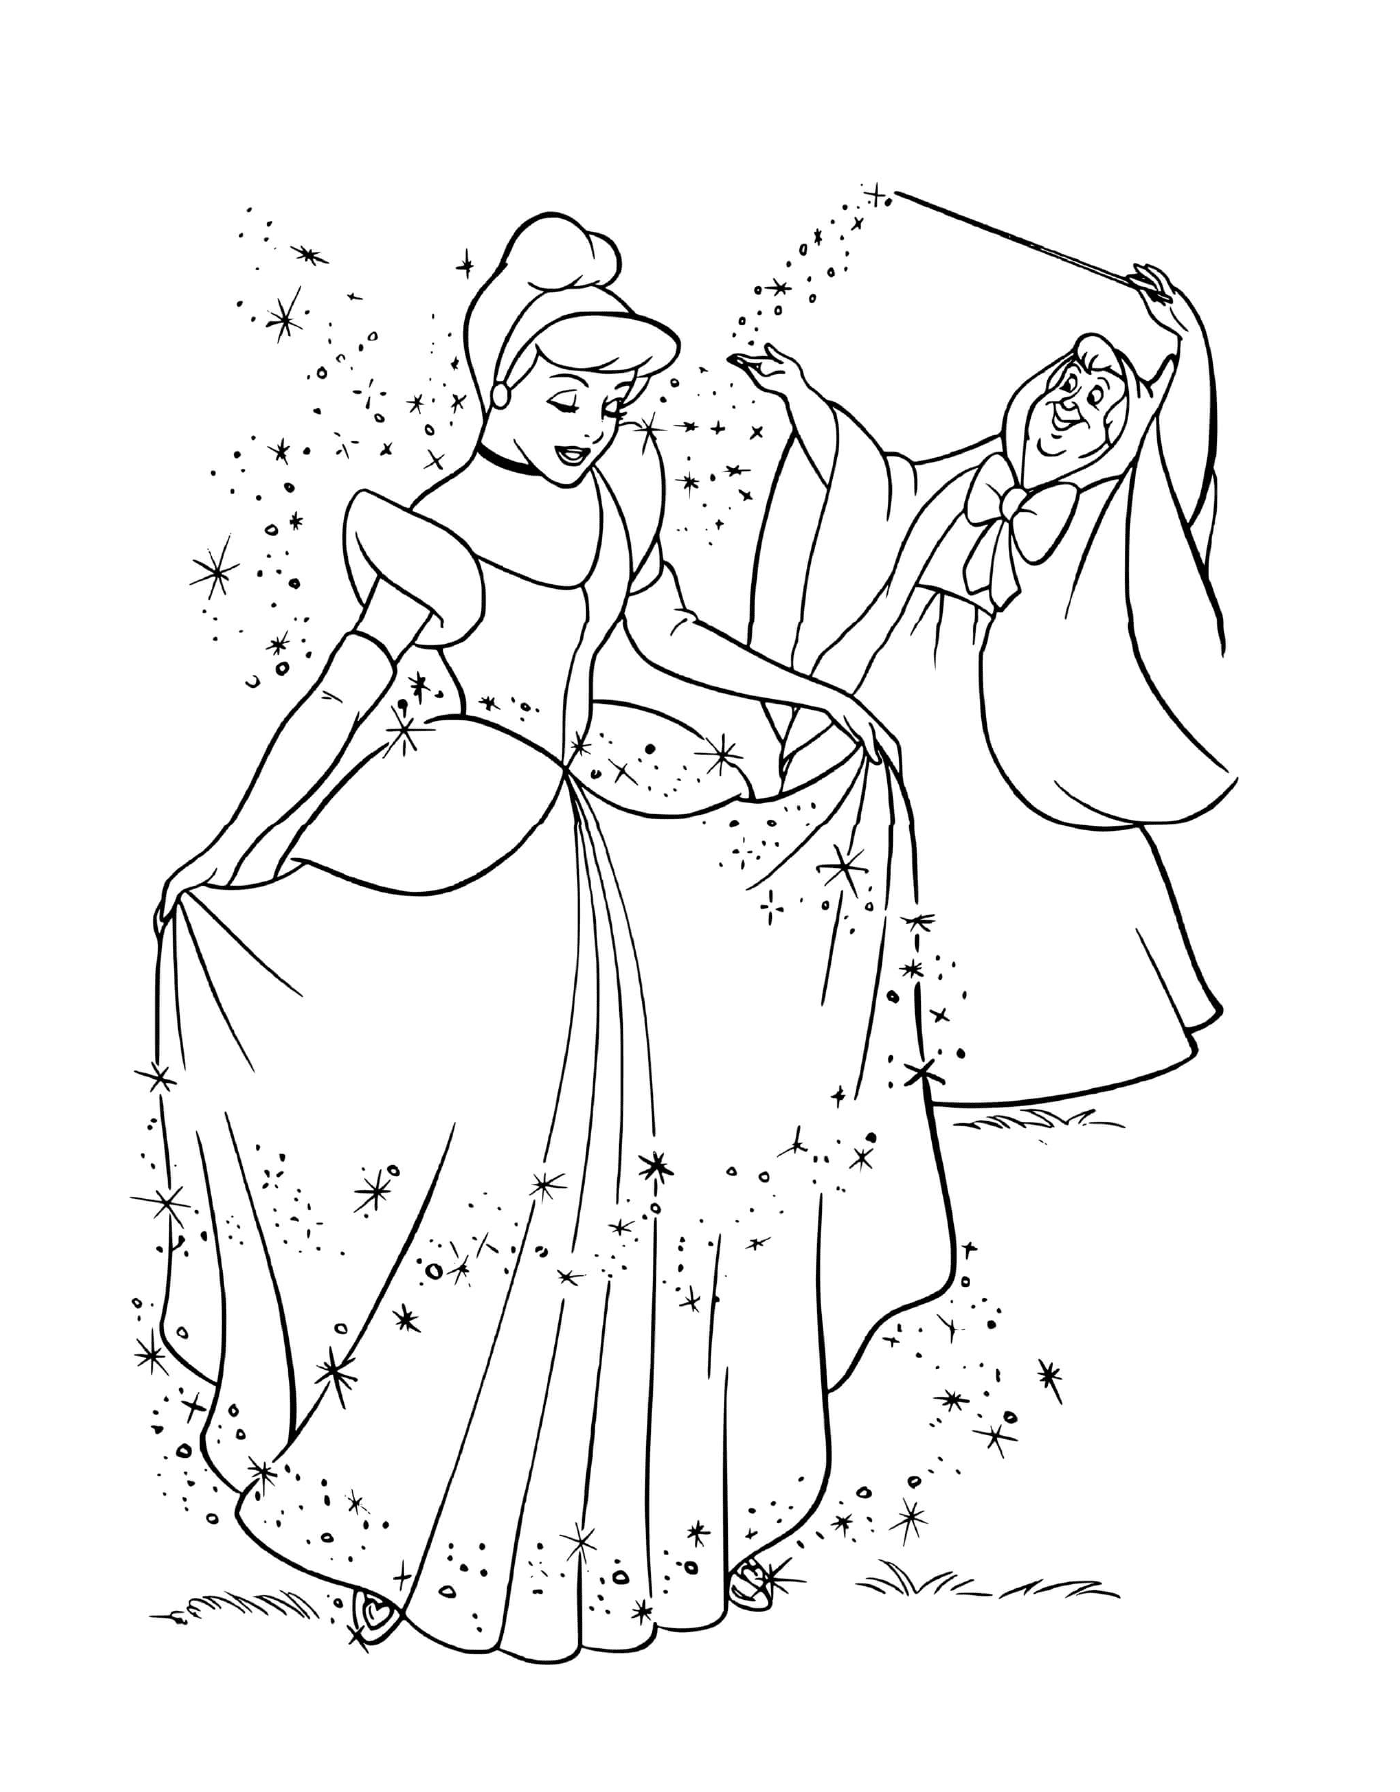  राजकुमारी कार्ना और उसकी माँ के साथ शुद्ध जादू 